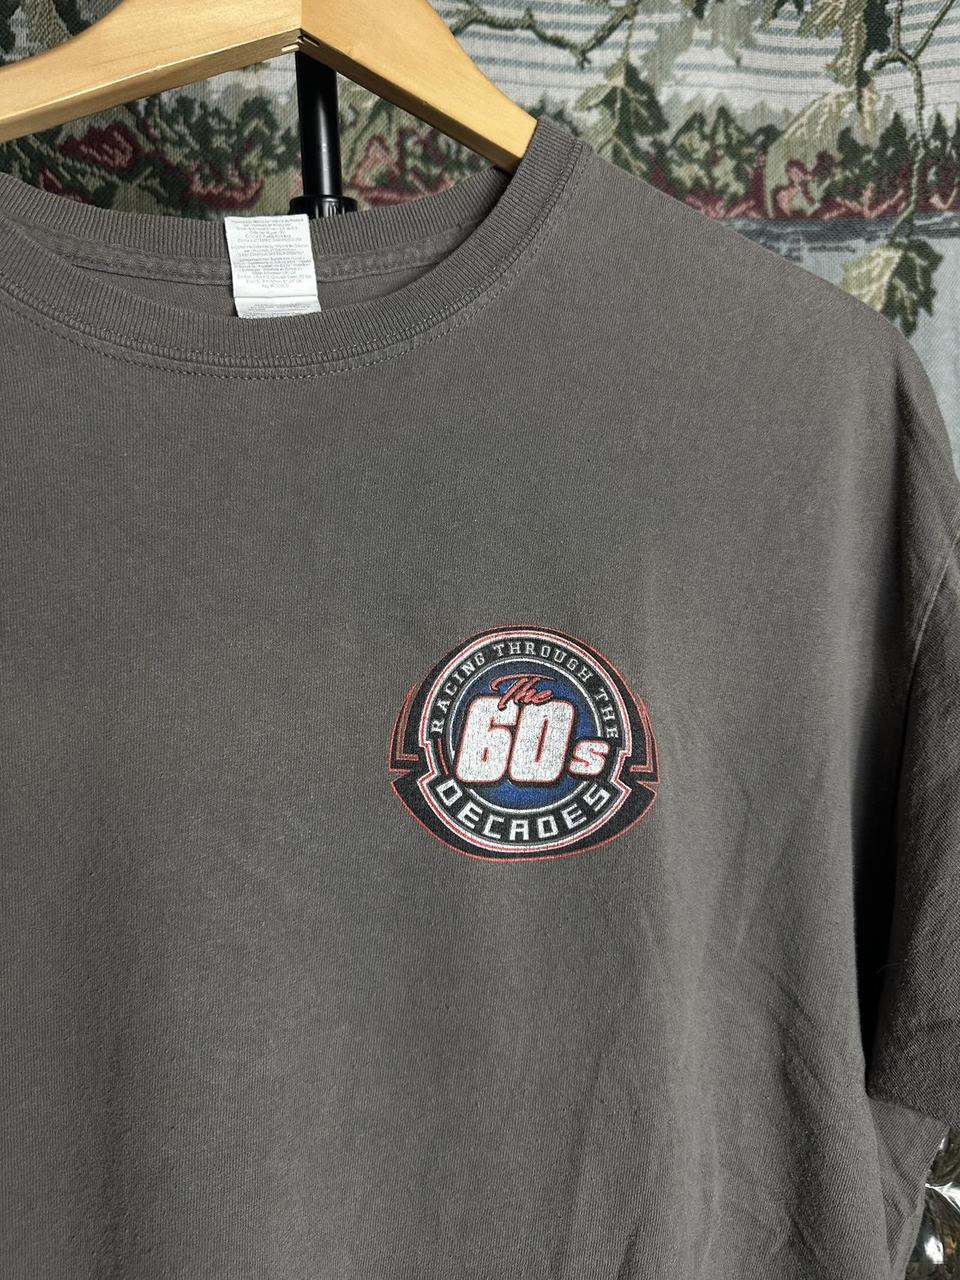 Racing through the decades 1960s racing T-shirt... - Depop